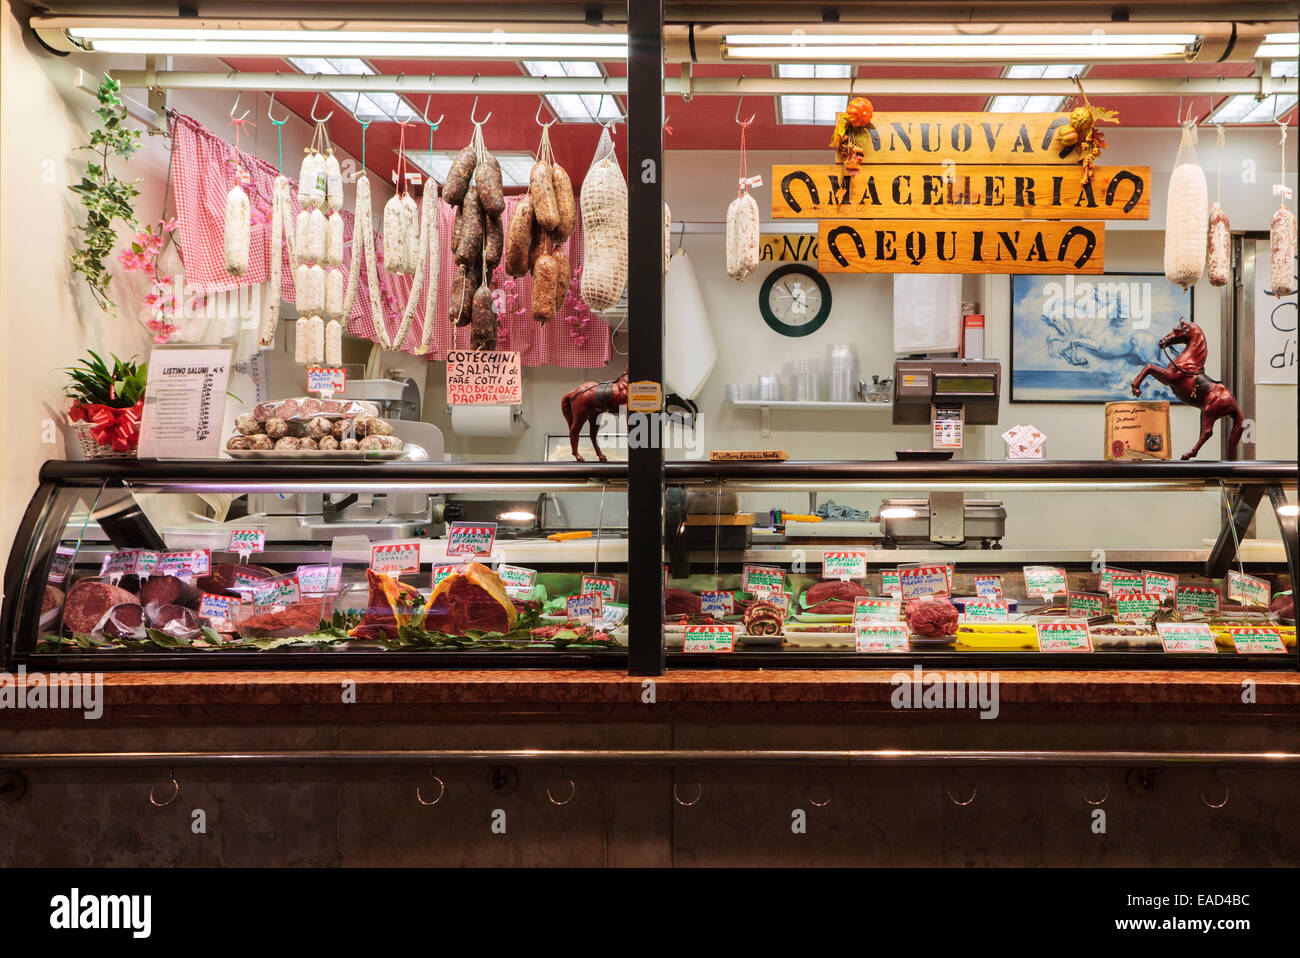 Vitrine d'une boucherie de viande chevaline, Padoue, Italie Photo Stock -  Alamy